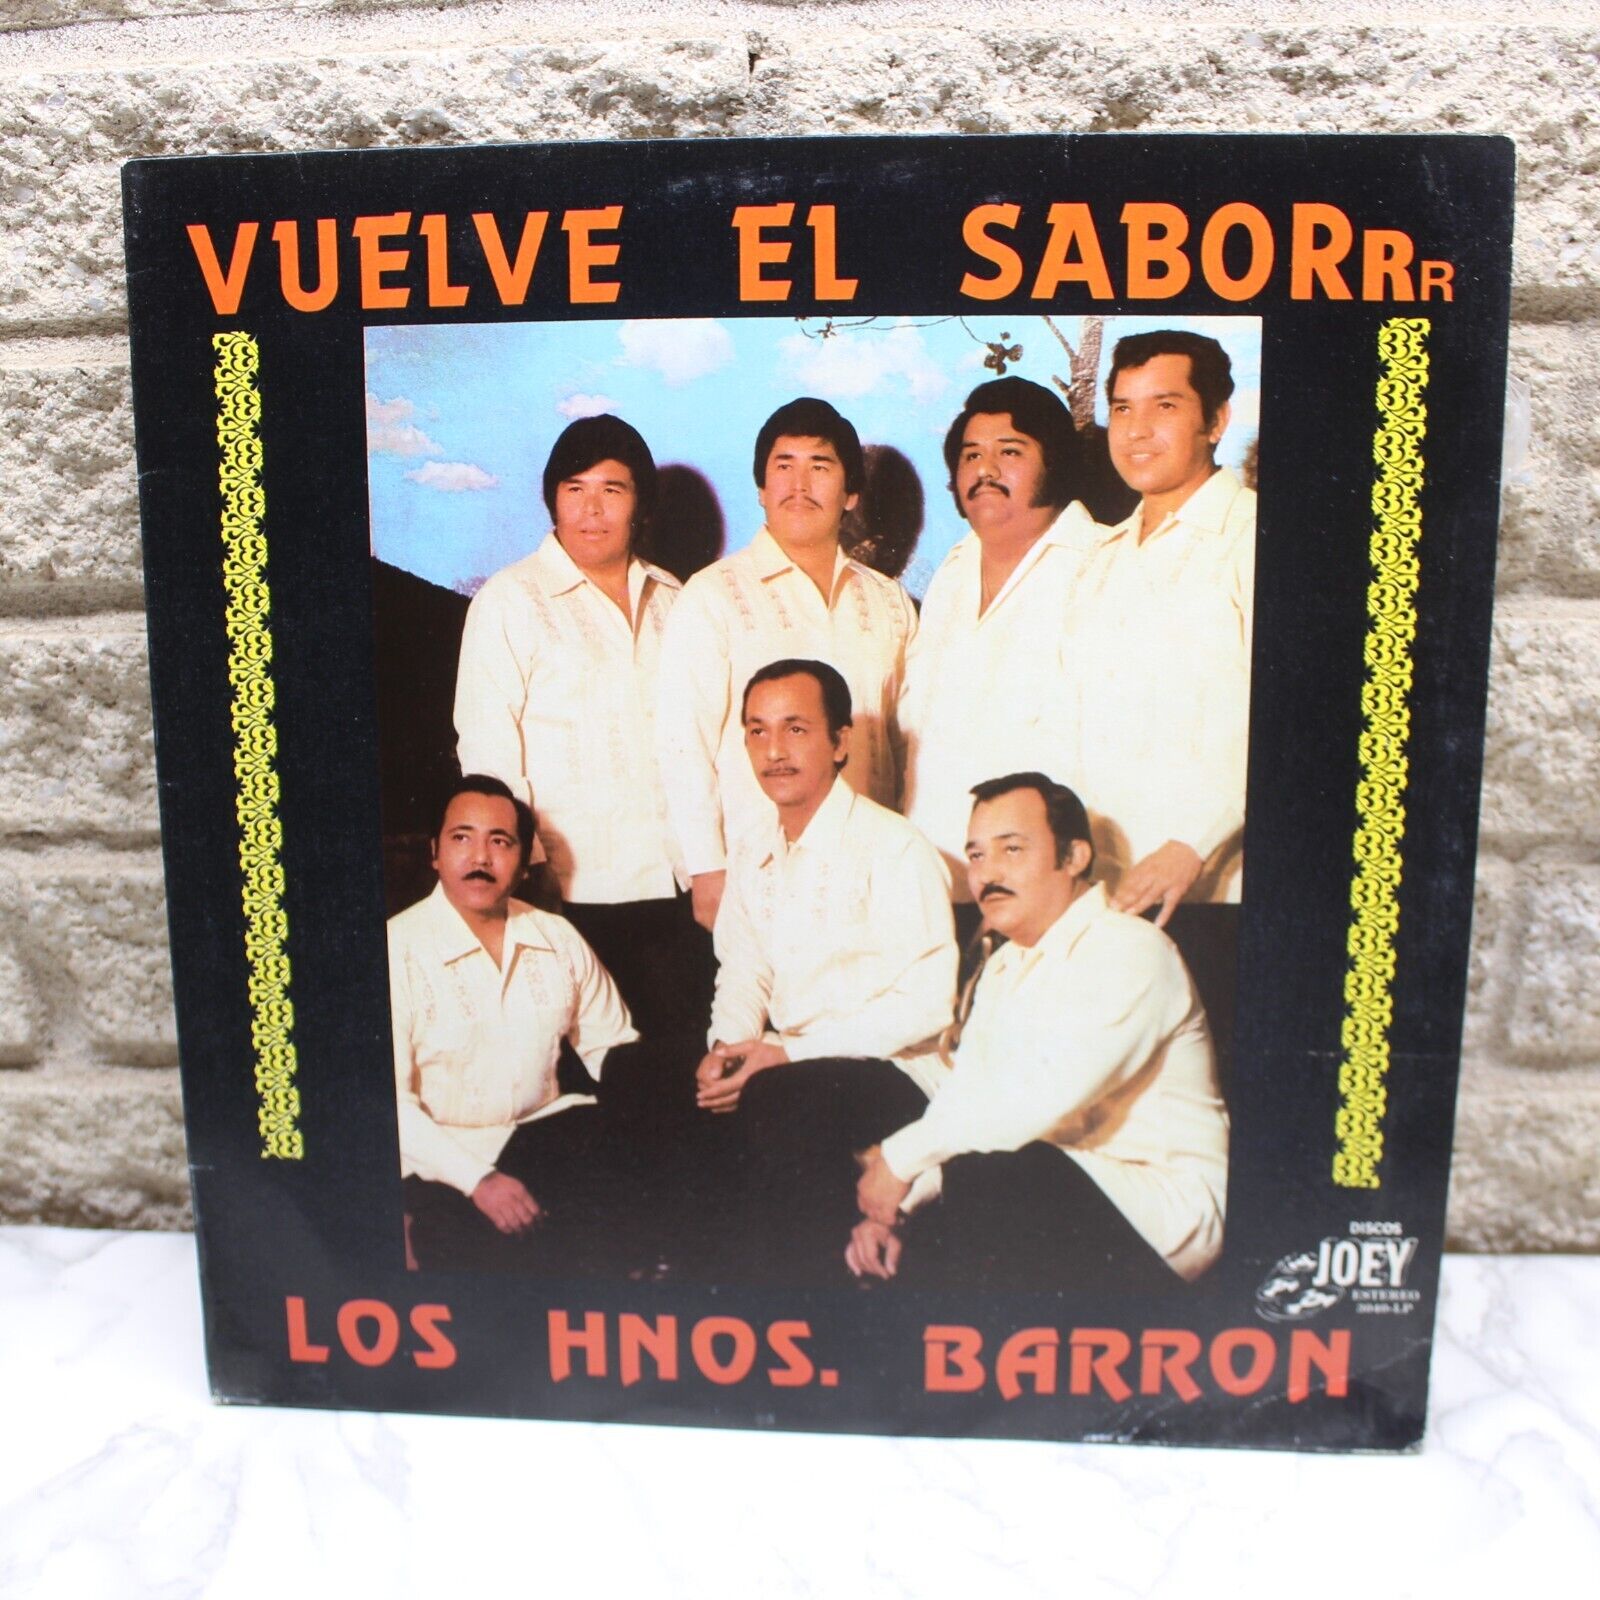 Los Hermanos Barron Vuelve El Saborrr Vinyl Record LP VG+ Album Rare